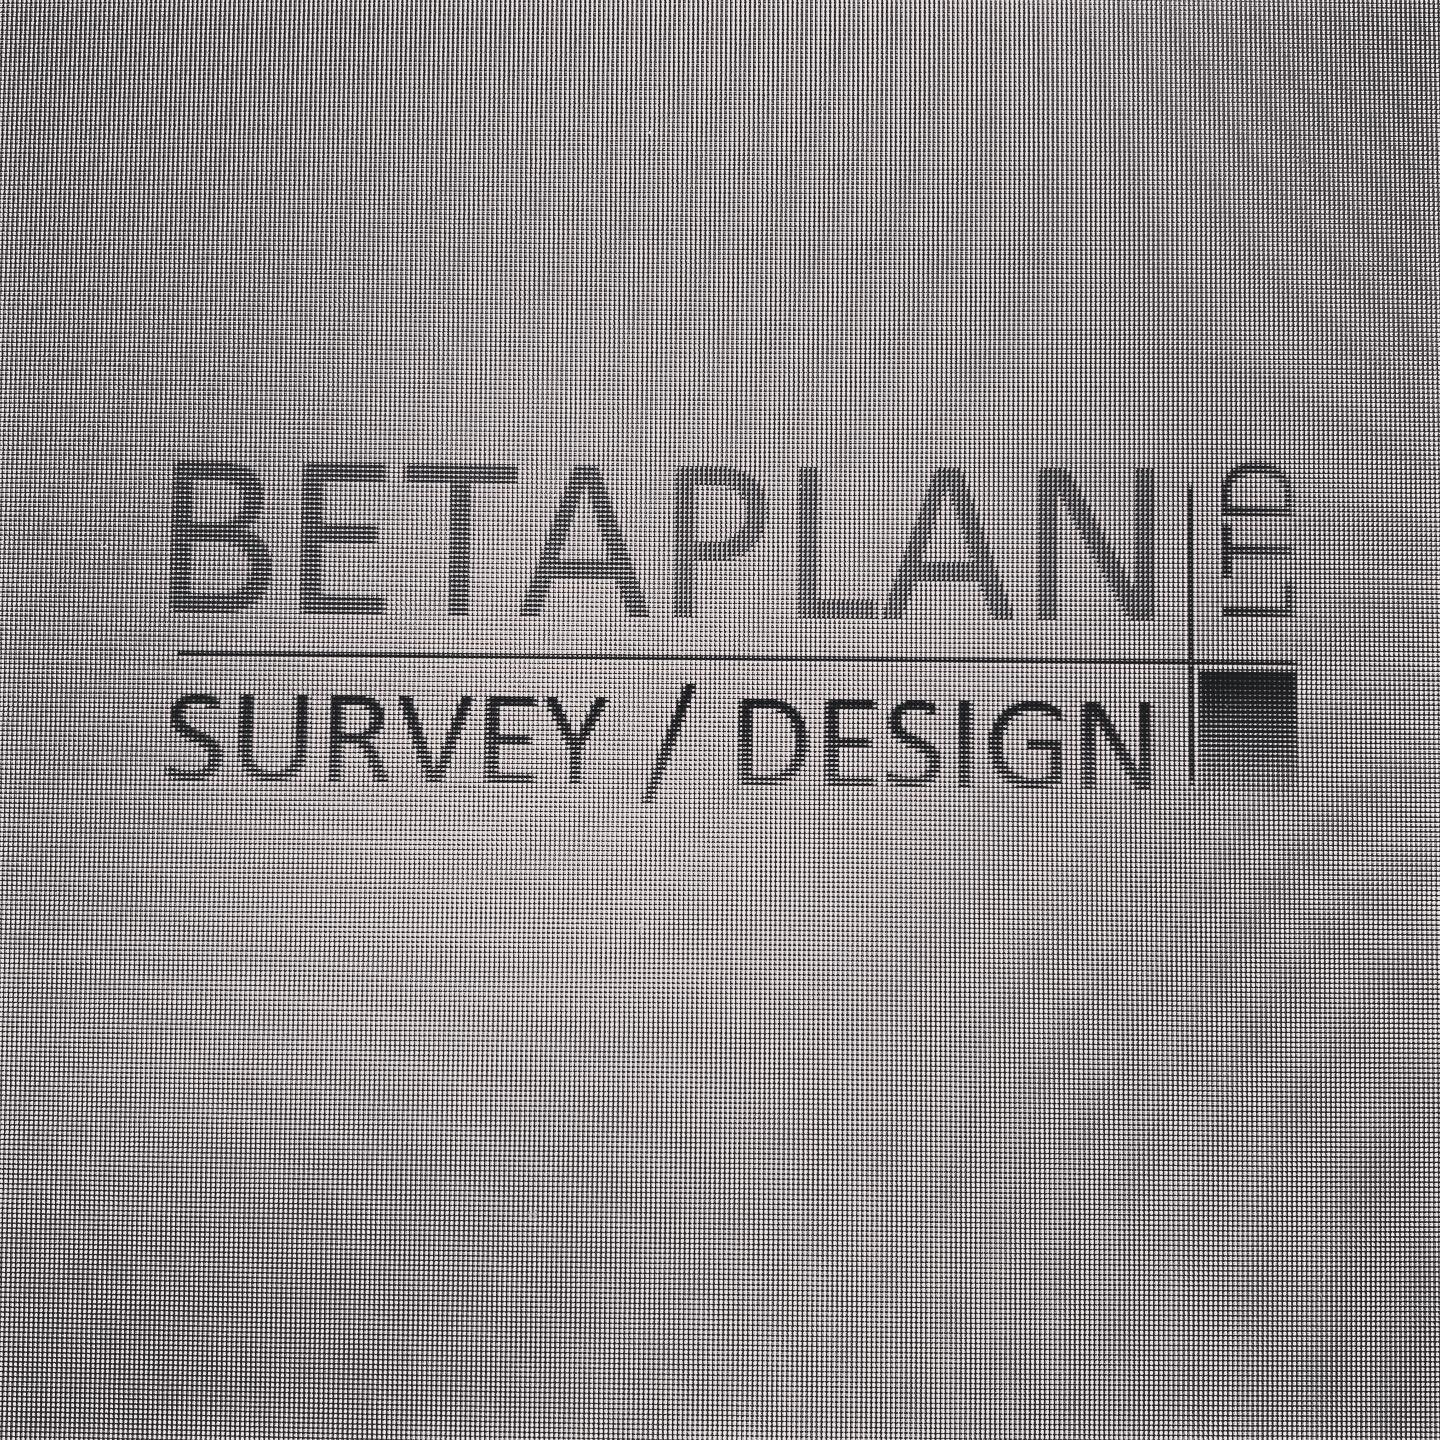 New website www.betaplan.co.uk